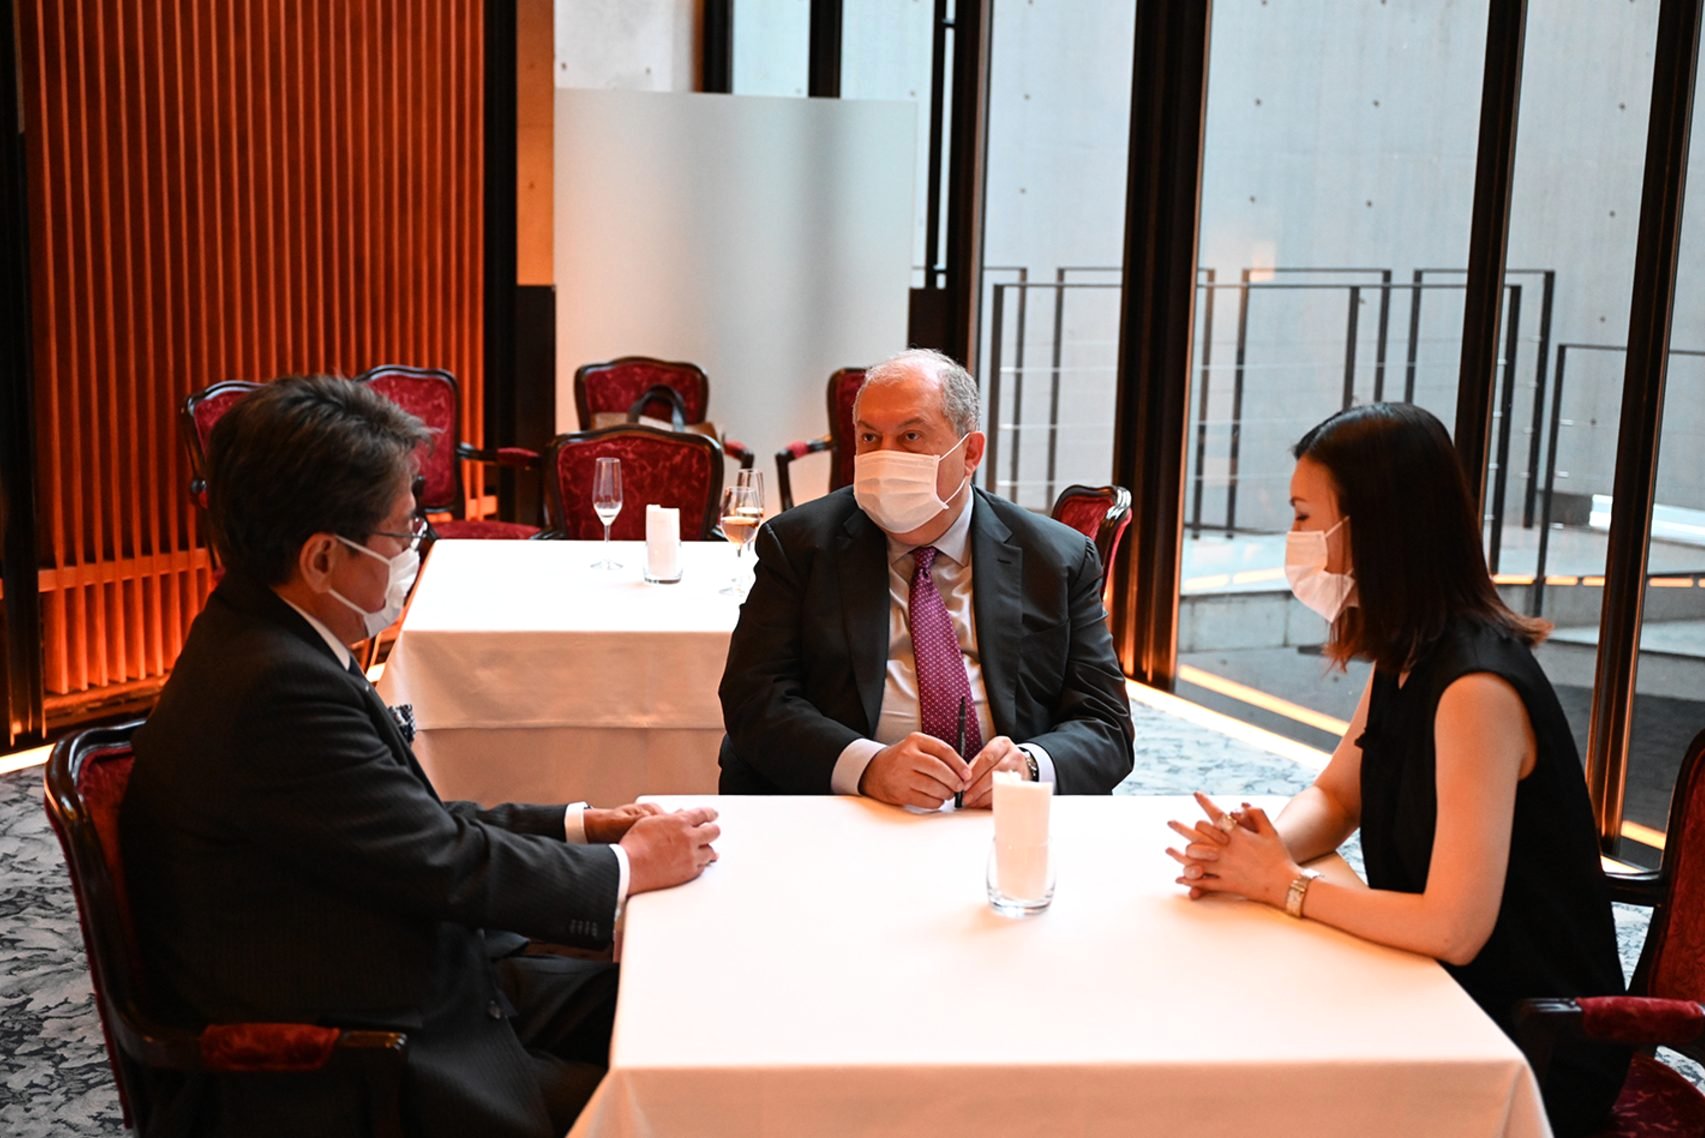 Արմեն Սարգսյանը հանդիպում է ունեցել Միջազգային համագործակցության ճապոնական բանկի ղեկավարի հետ